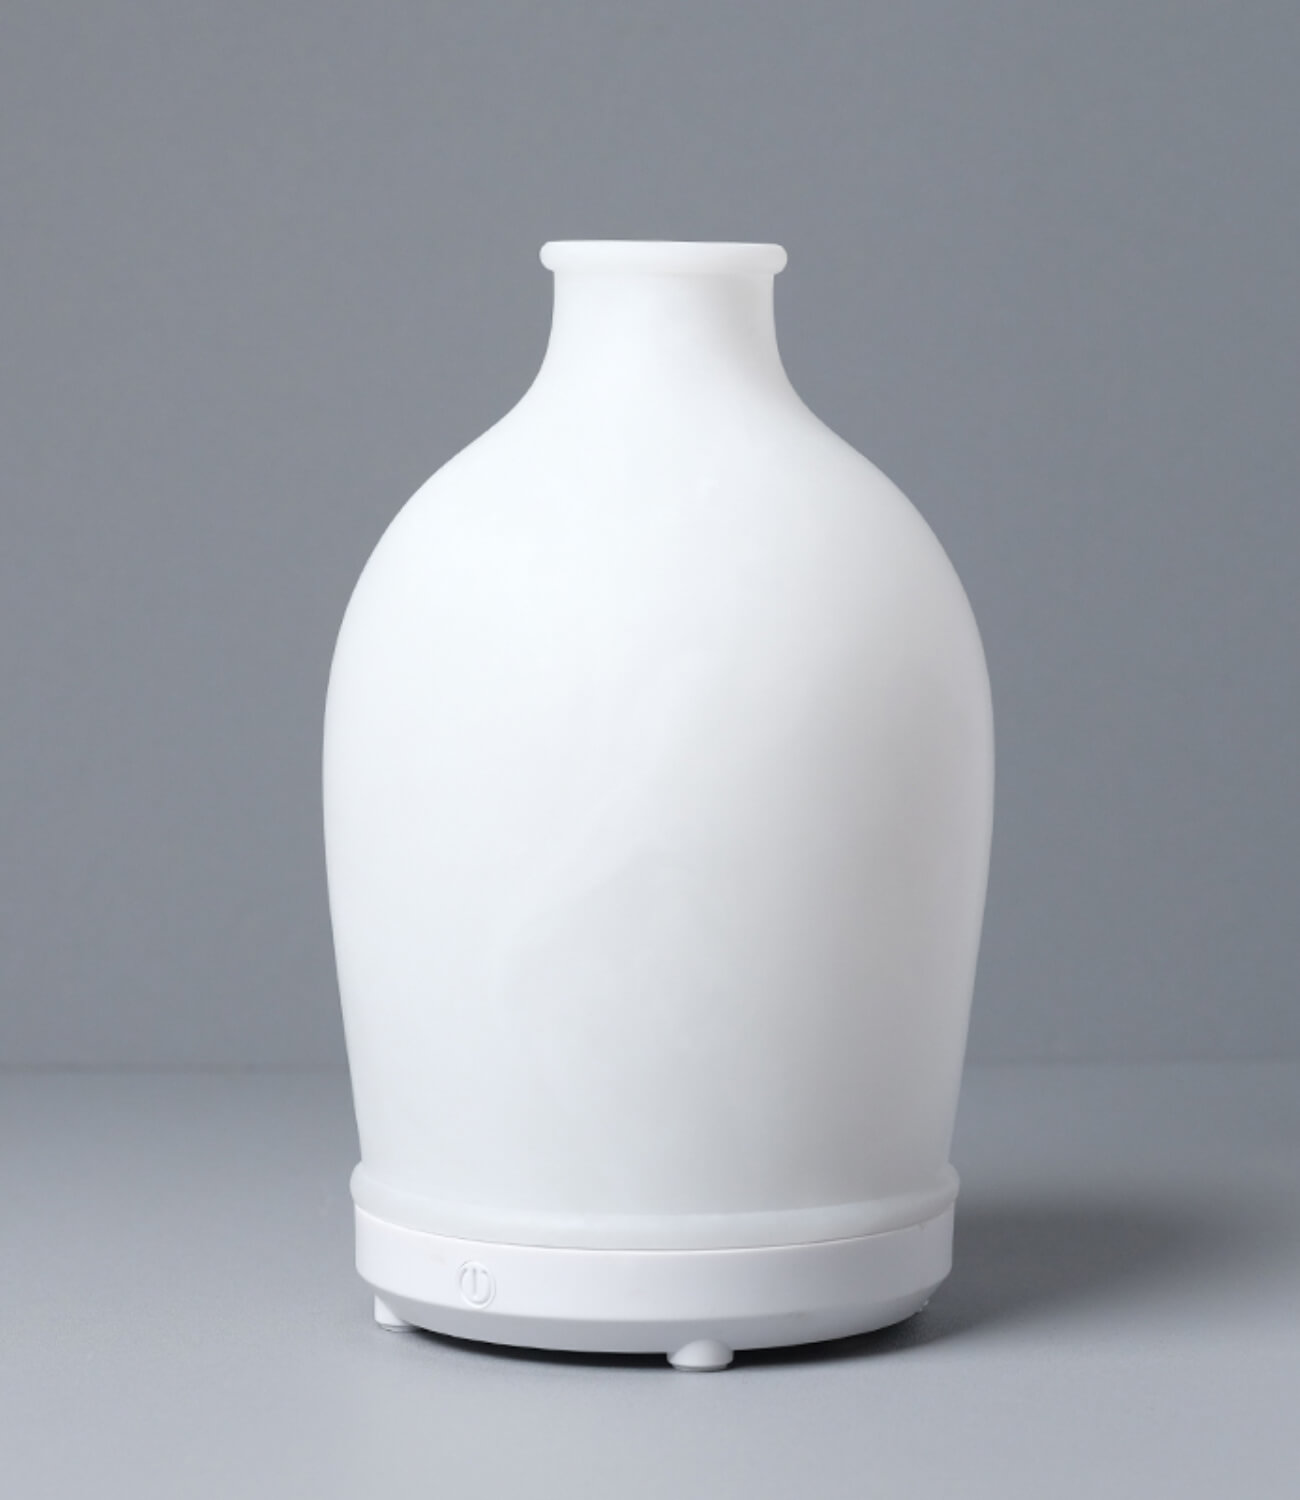 Ordinary Style Vase of Aromas.